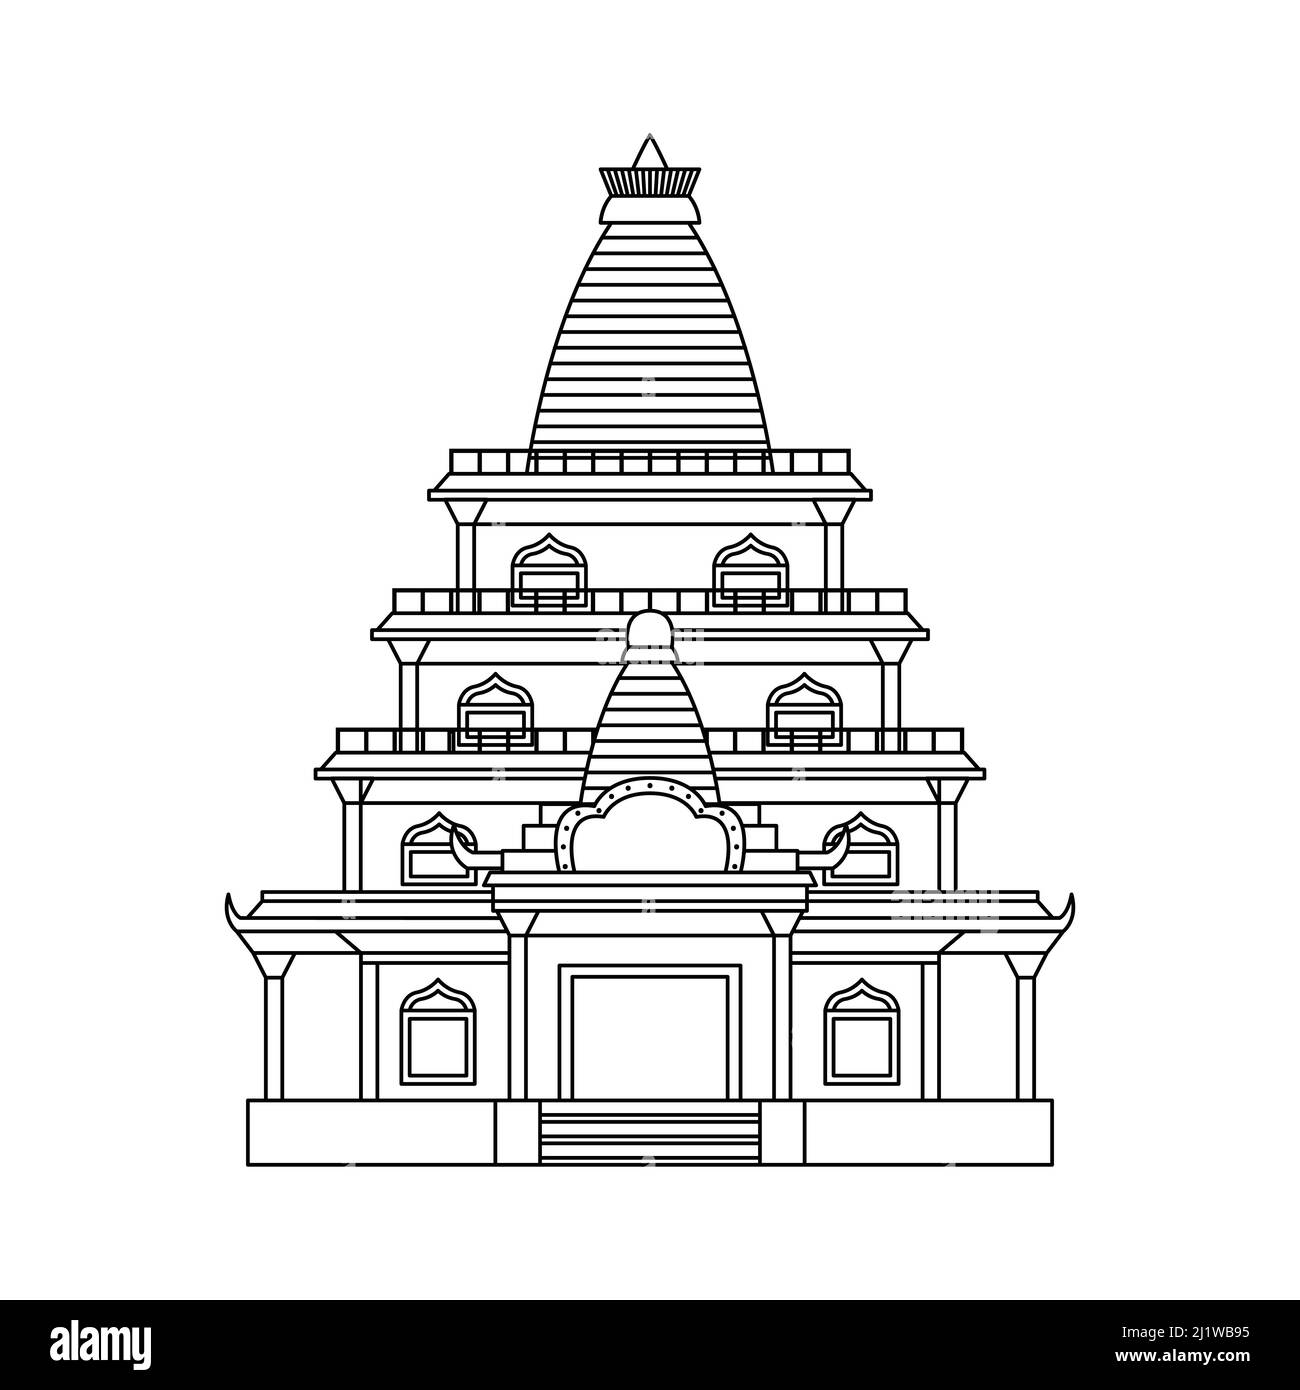 Vektor-Illustration eines buddhistischen Tempels. Religiöses Architekturgebäude. Gliederung Stock Vektor